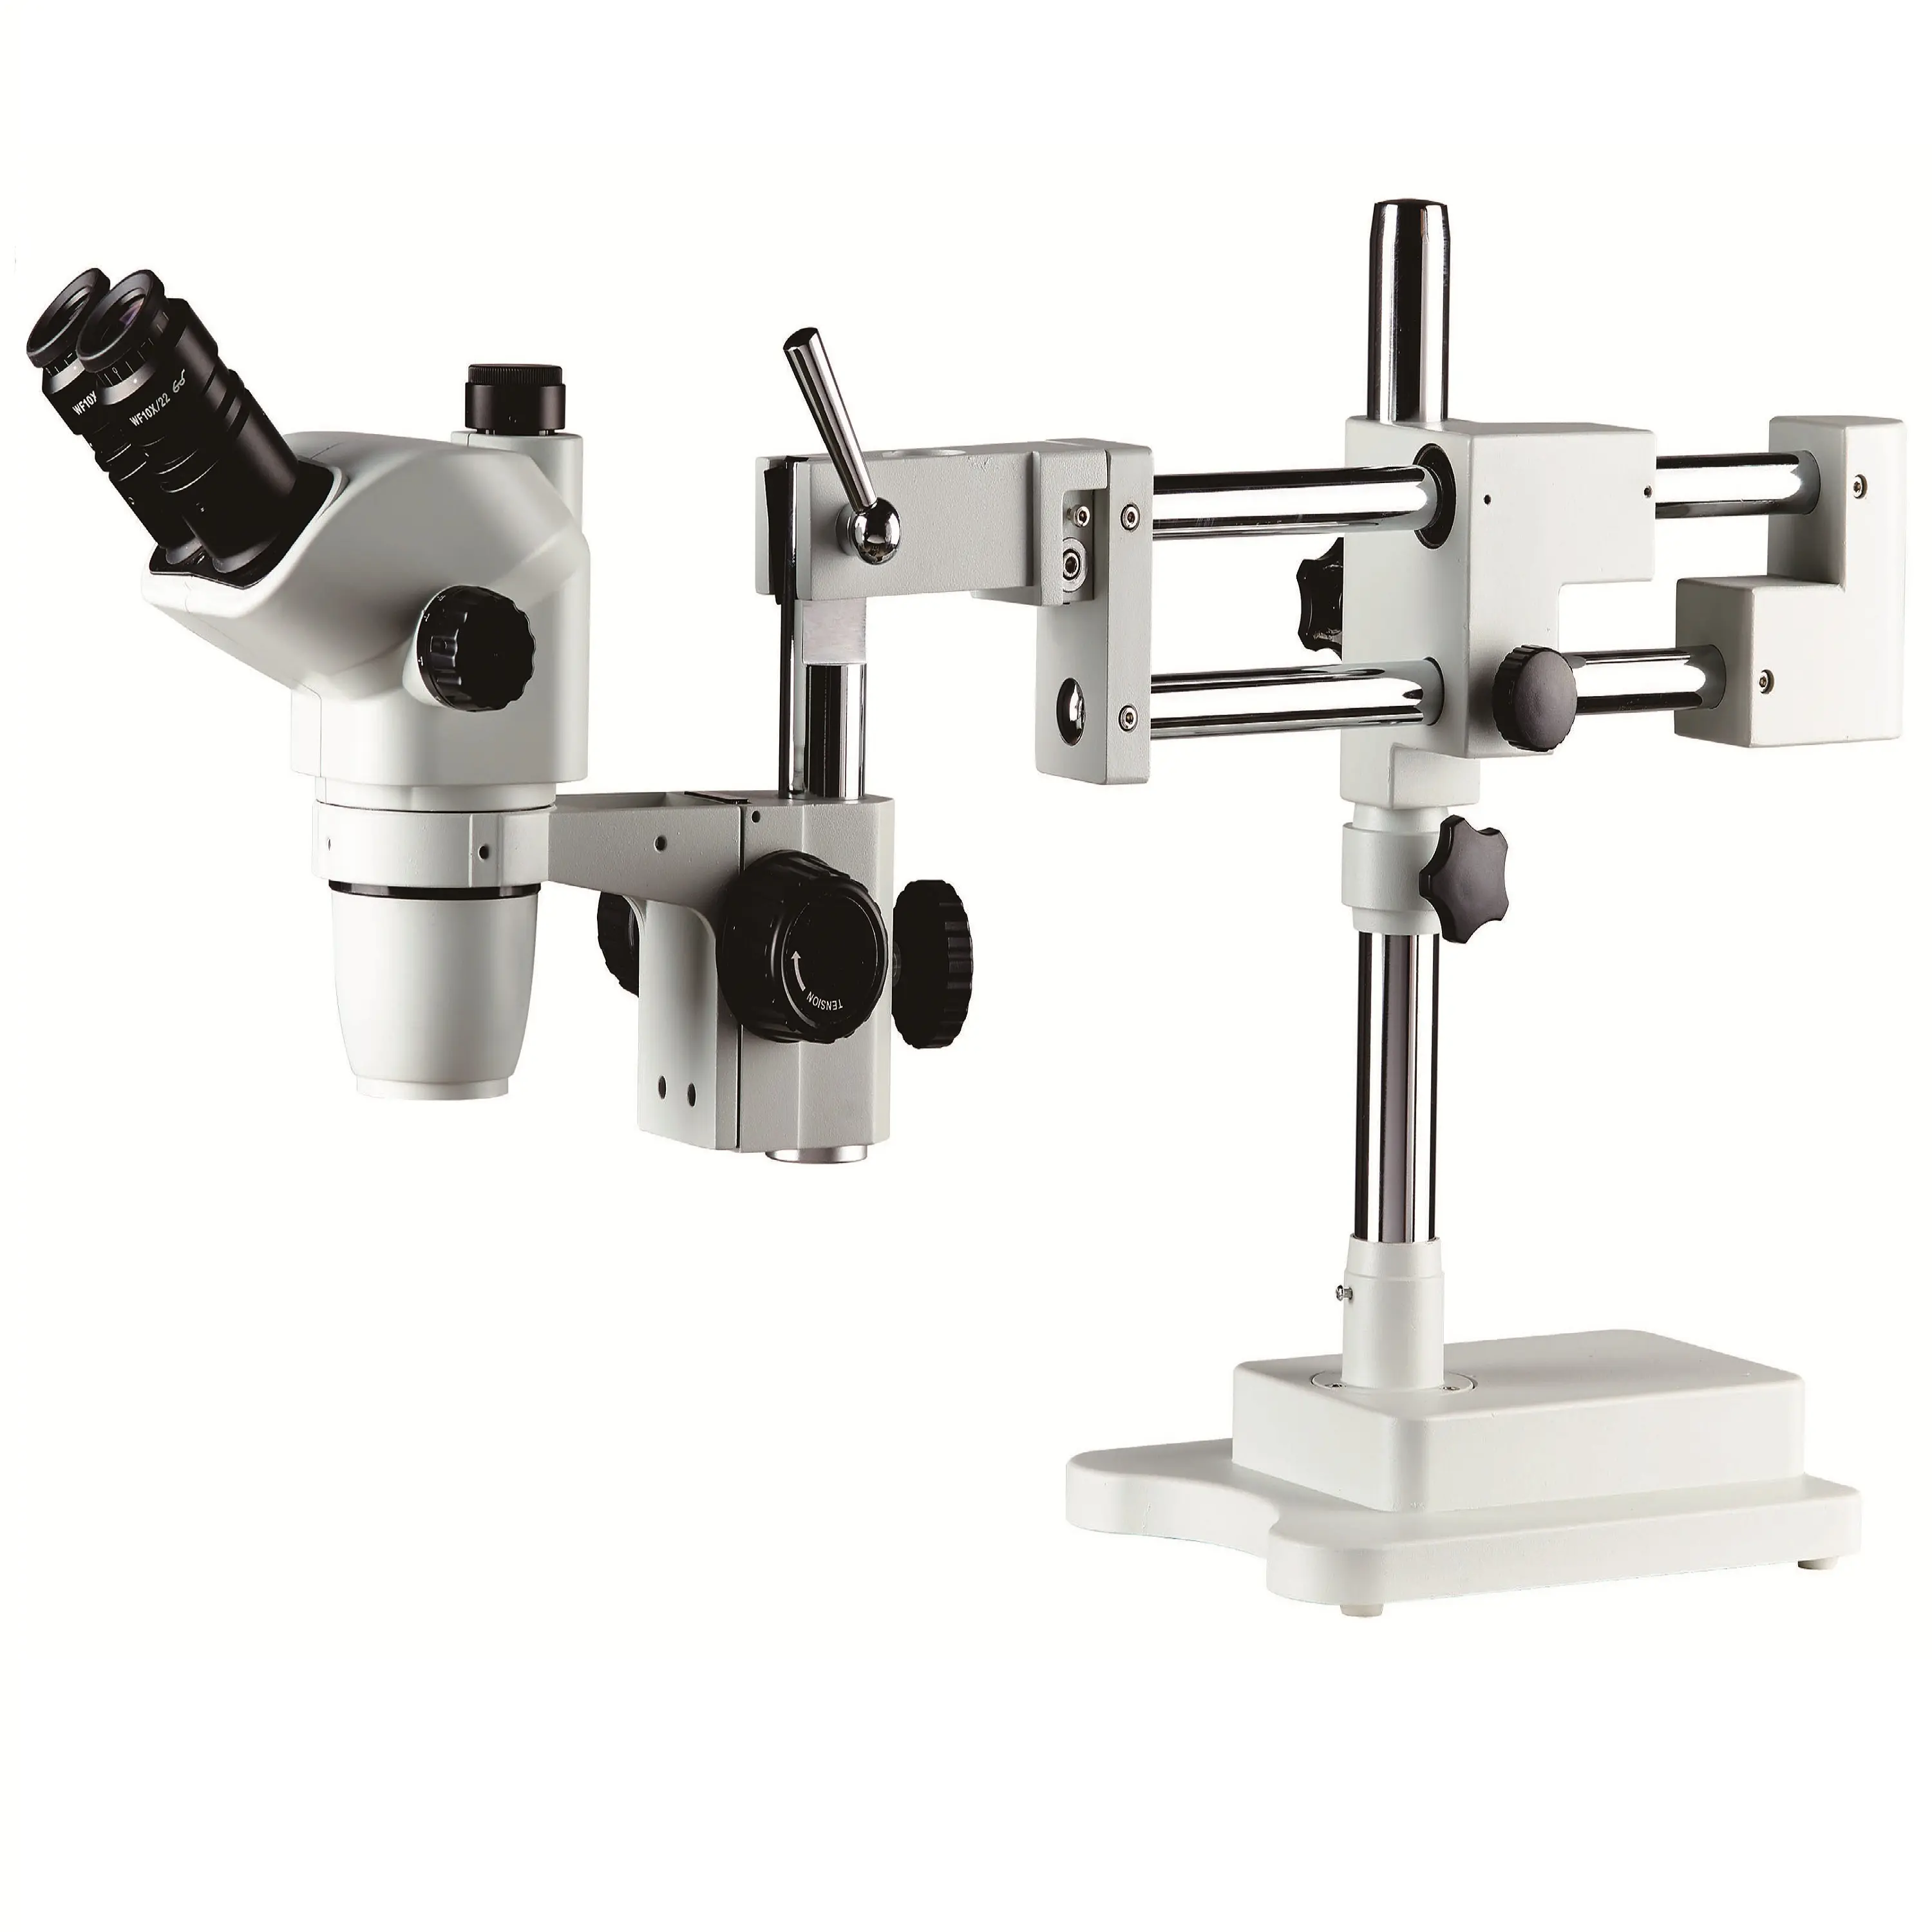 BestScope-Microscopio estéreo con zoom trinocular, soporte universal de doble brazo, para reparación de placa de circuito